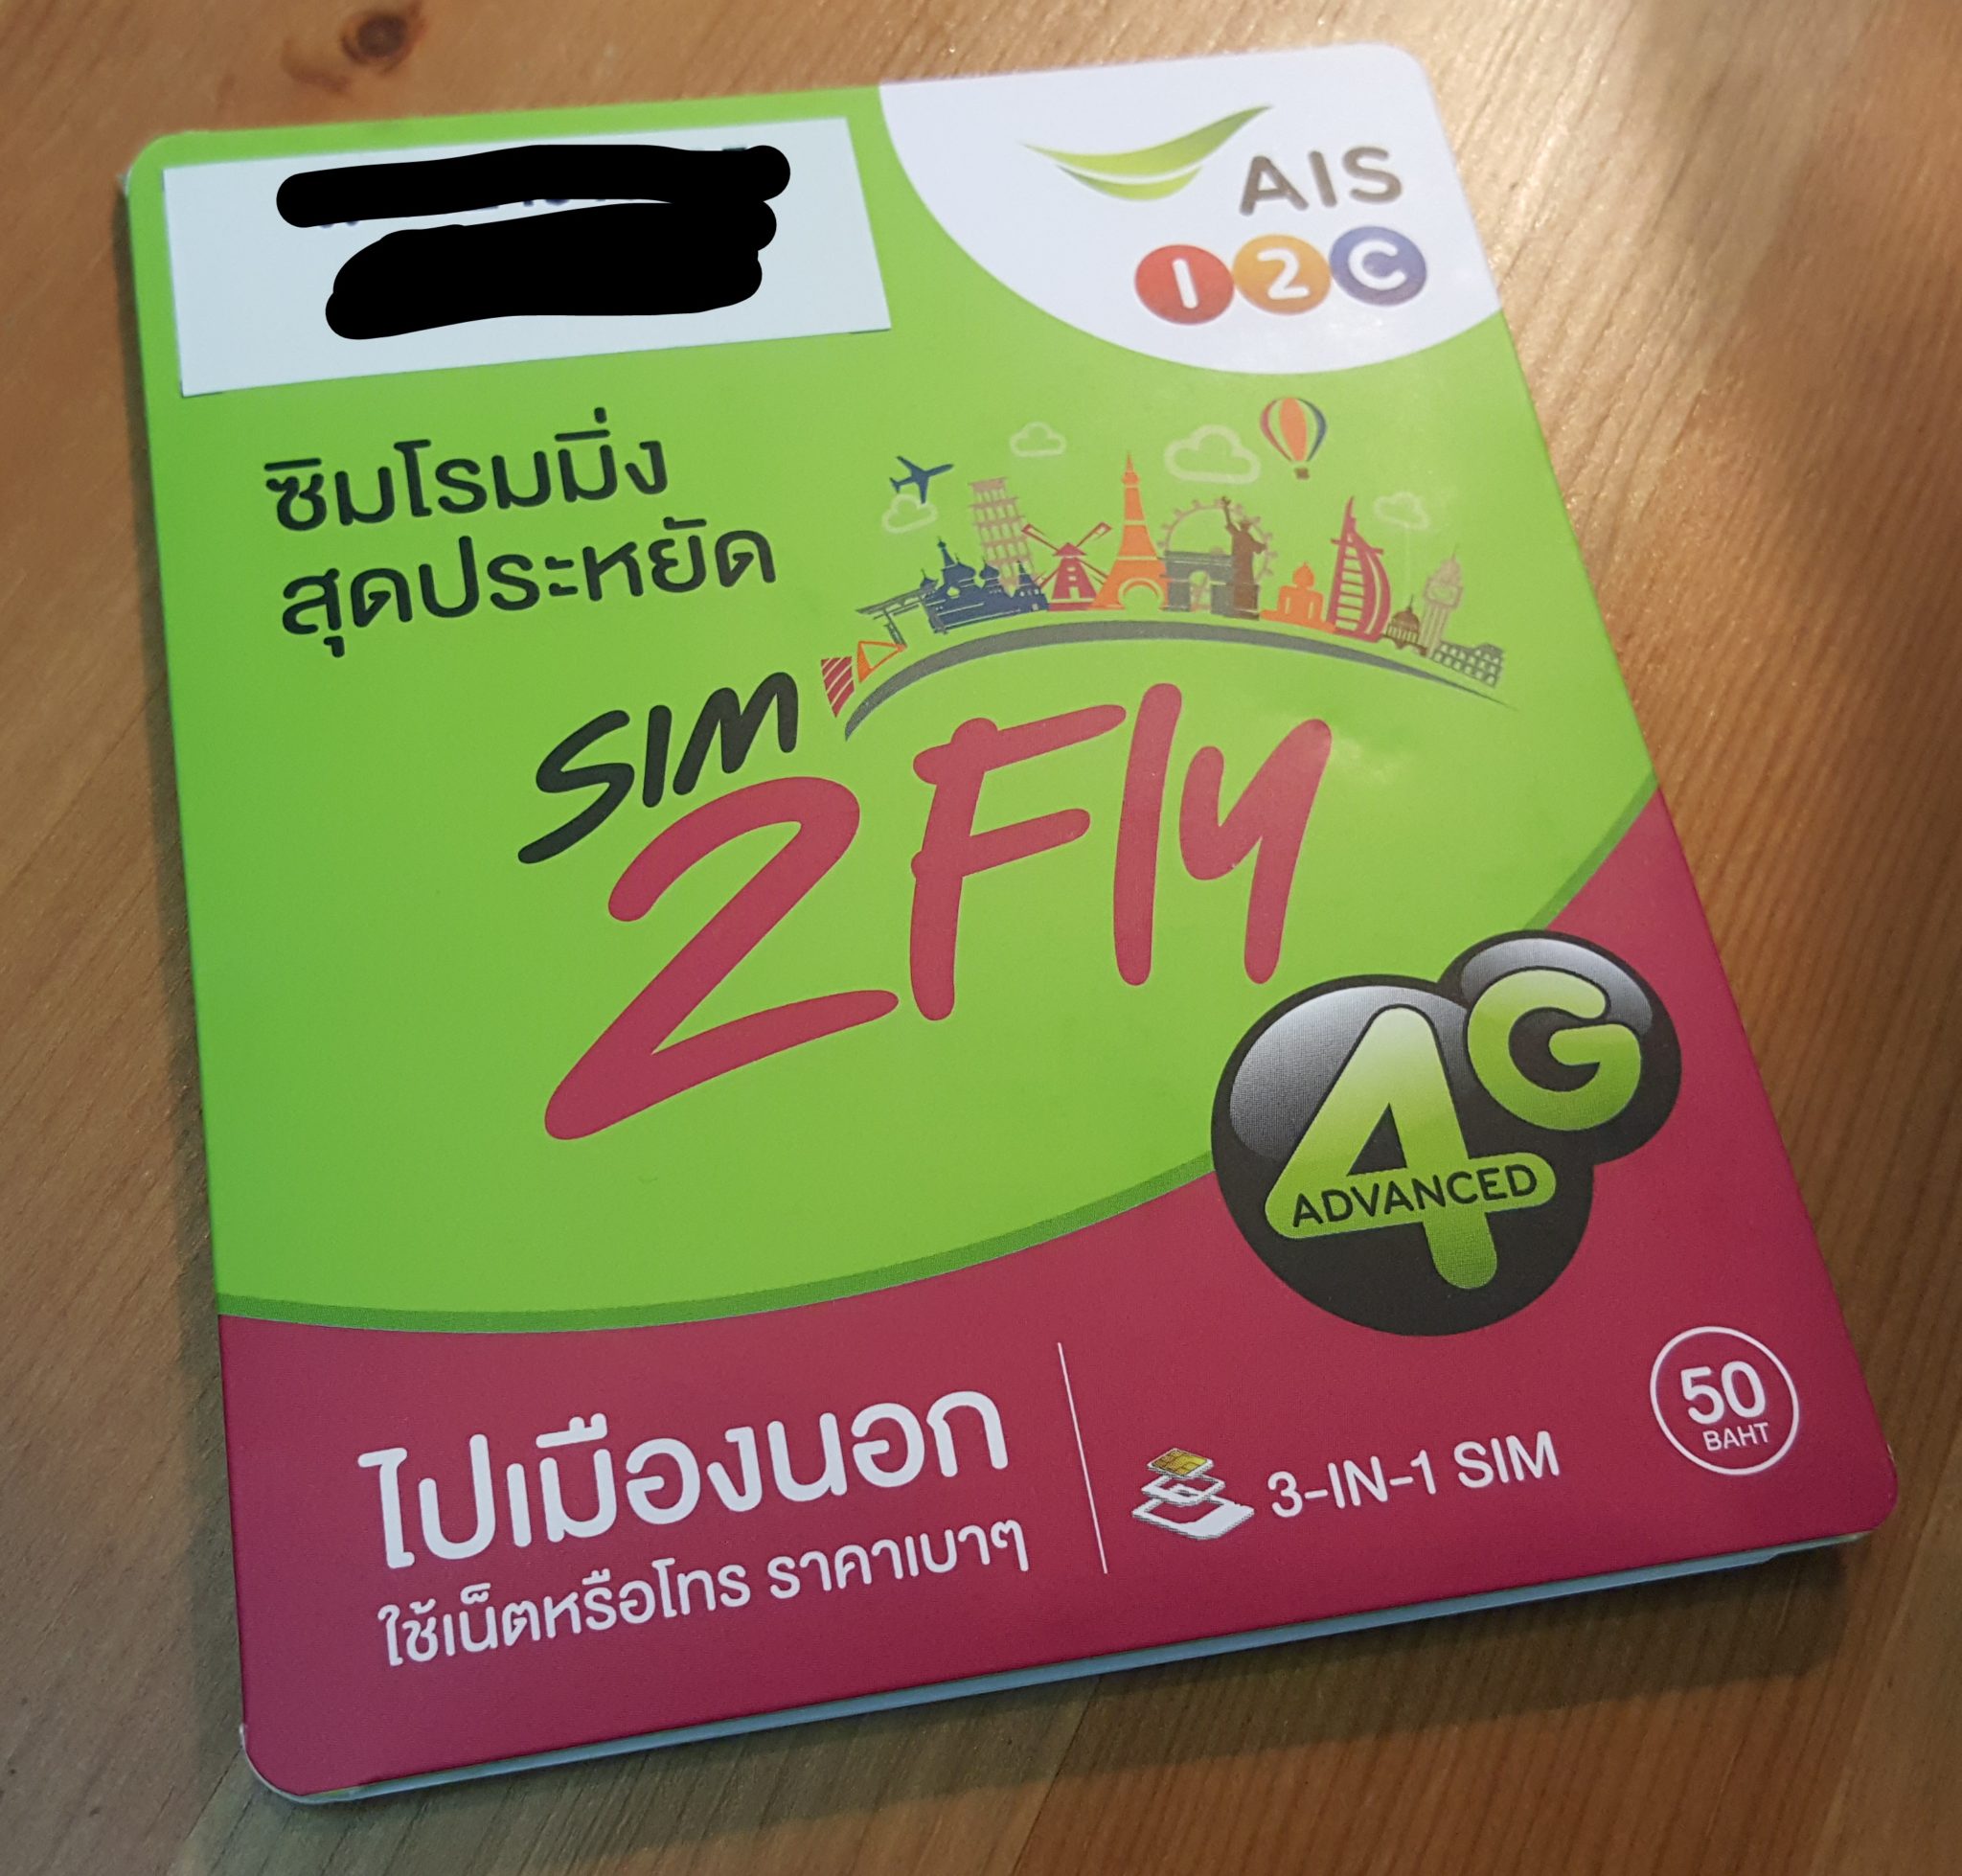 กล่องซิม sim2fly ของ AIS